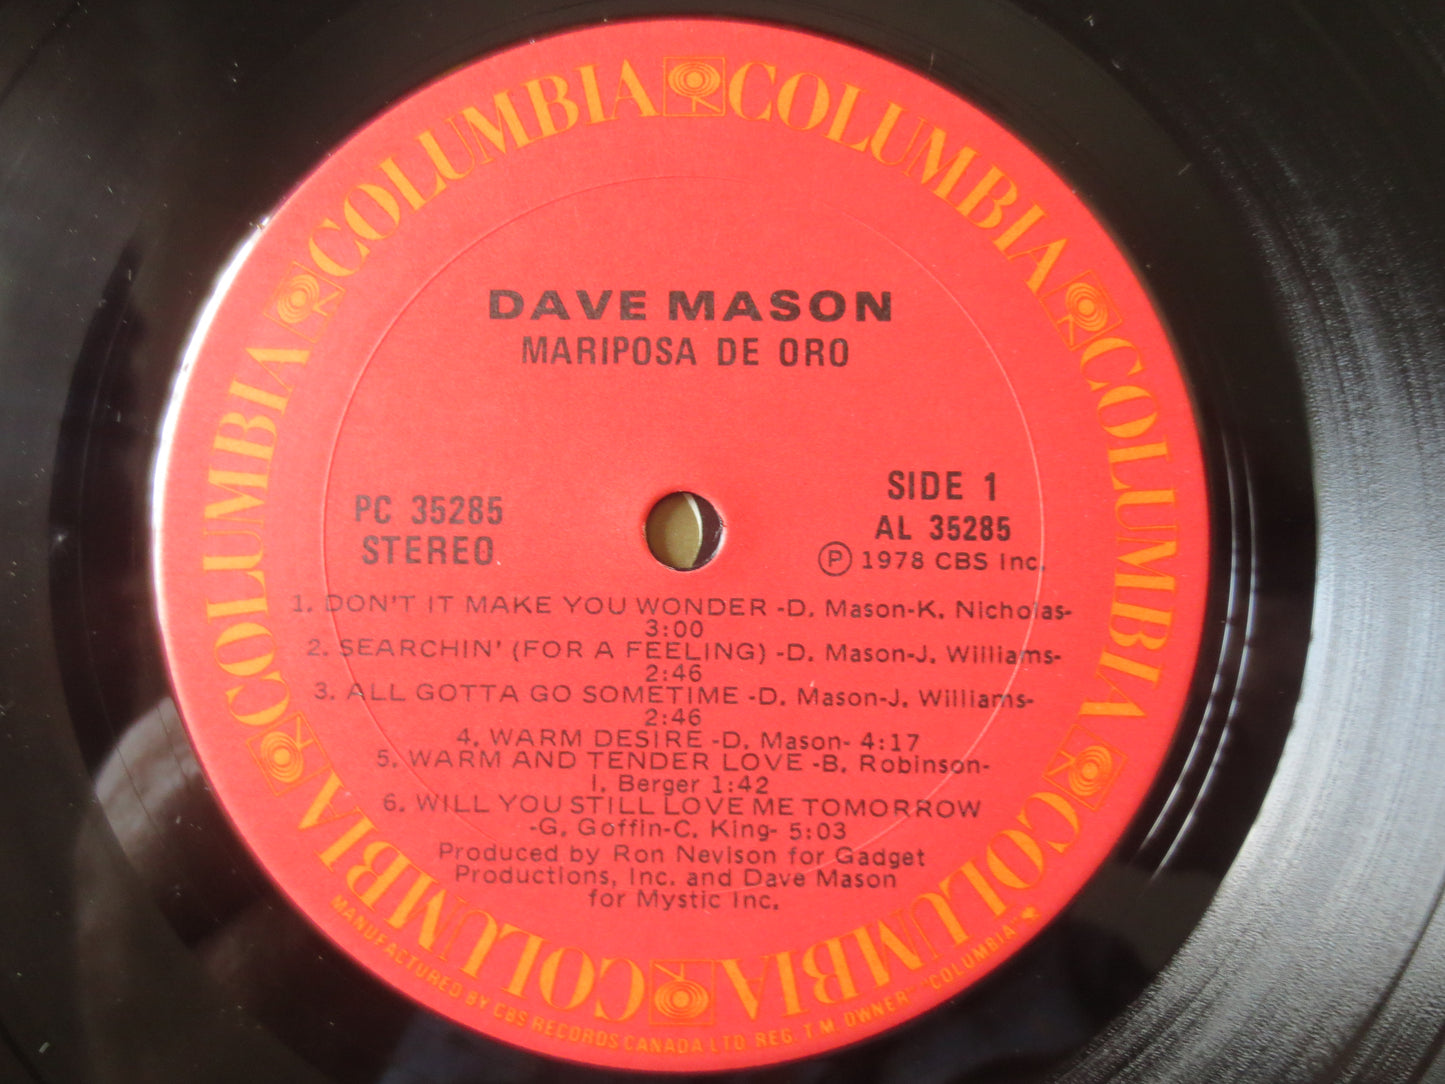 DAVE MASON, MARIPOSA de Ora, Rock Record, Dave Mason Records, Dave Mason Albums, Dave Mason lp, Rock lp, Lps, 1978 Records